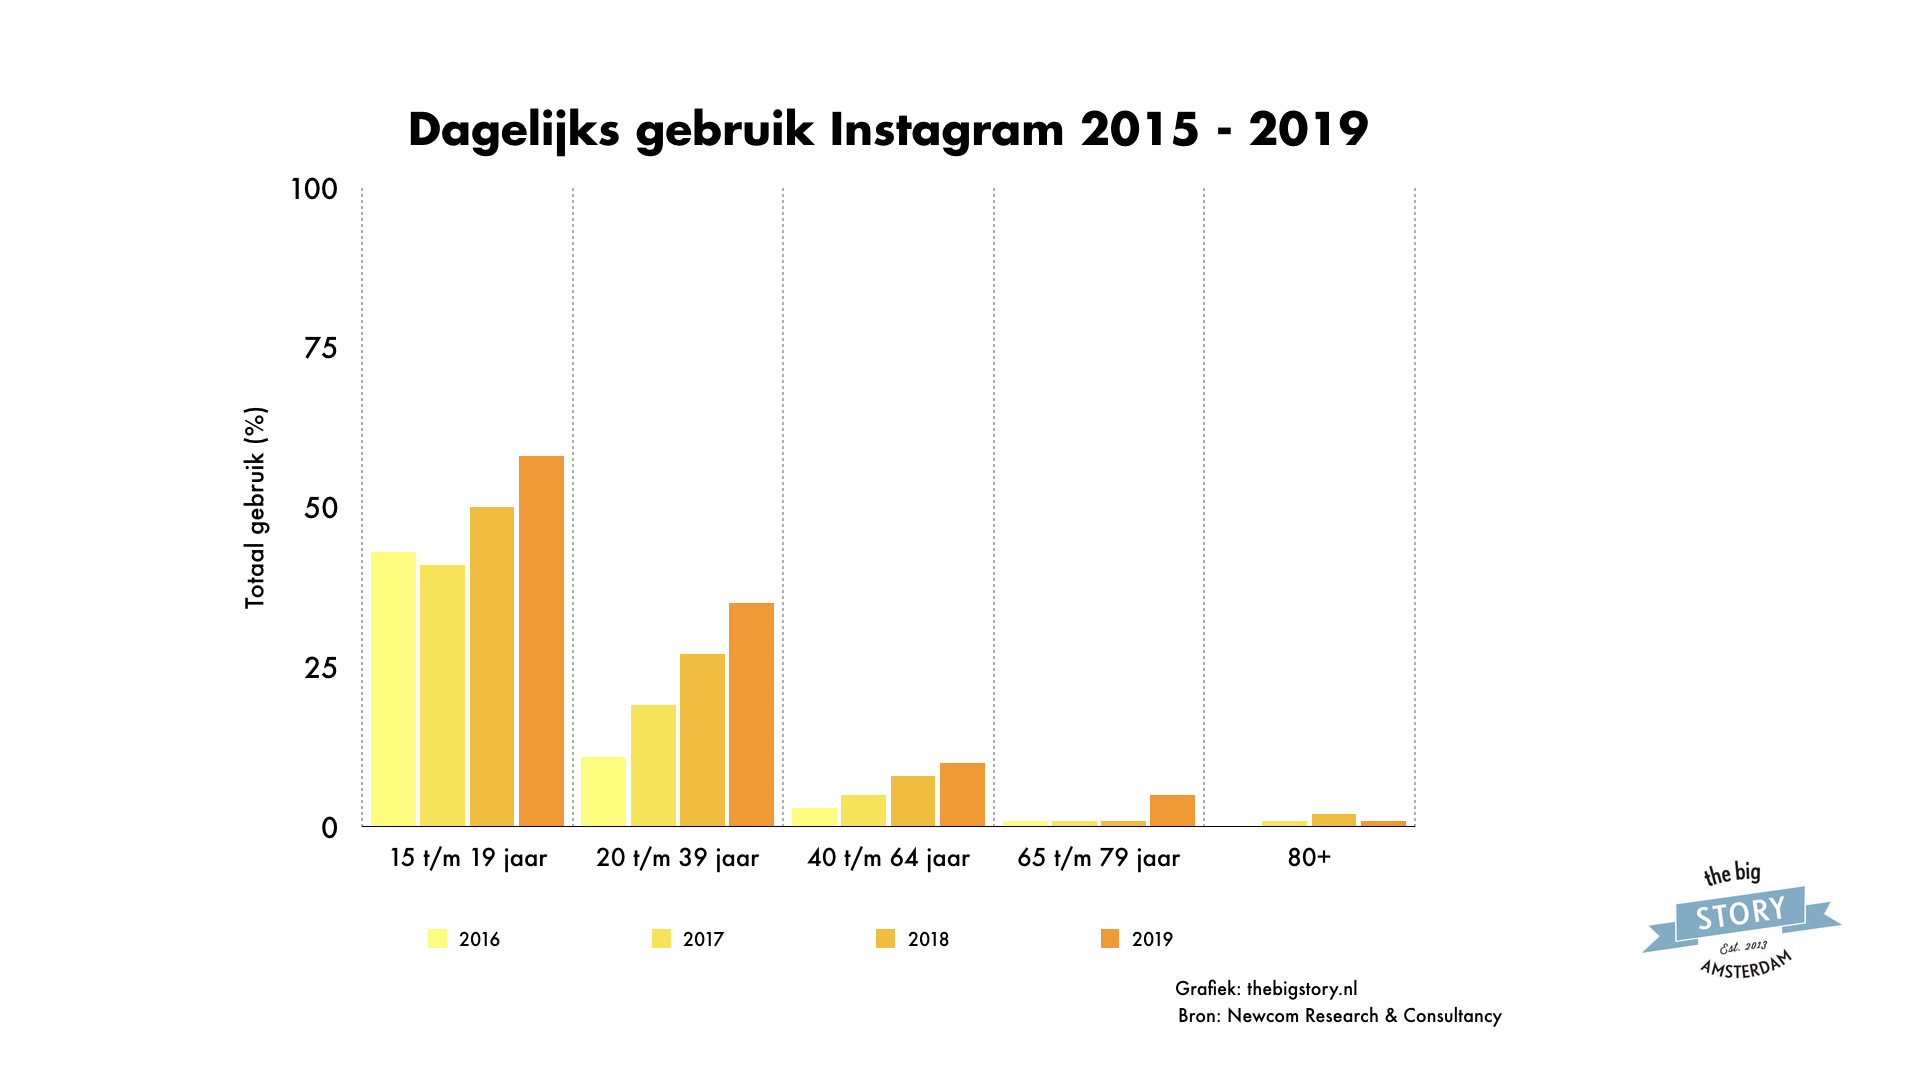 Dagelijk Instagram gebruik in Nederland 2016 - 2019